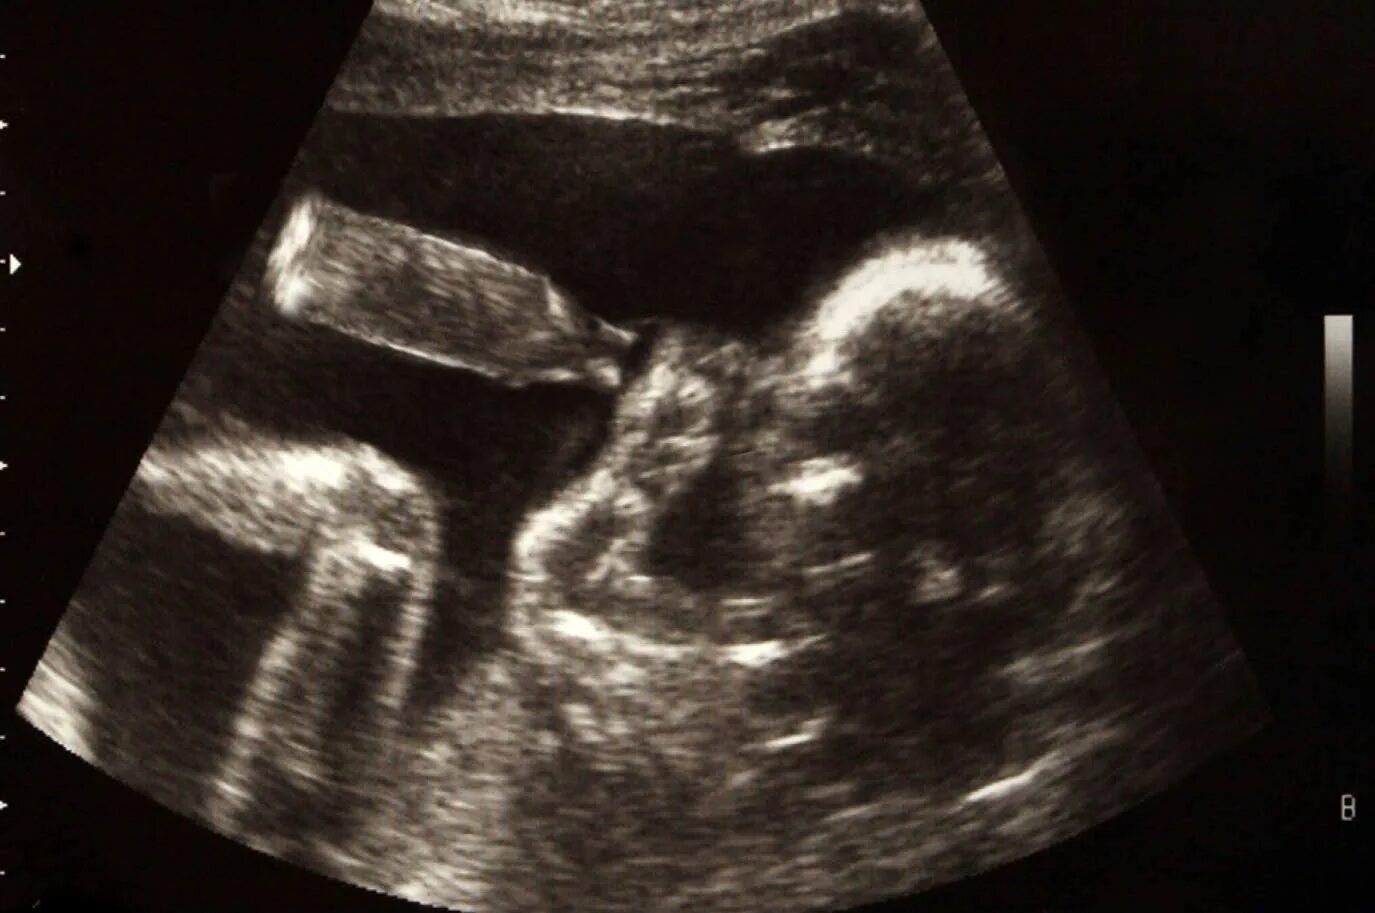 УЗИ двойни на 20 неделе беременности. УЗИ 19 недель беременности двойня. УЗИ ребенка на 20 неделе беременности фото двойня. УЗИ 15 недель беременности двойня. 19 недель размер плода